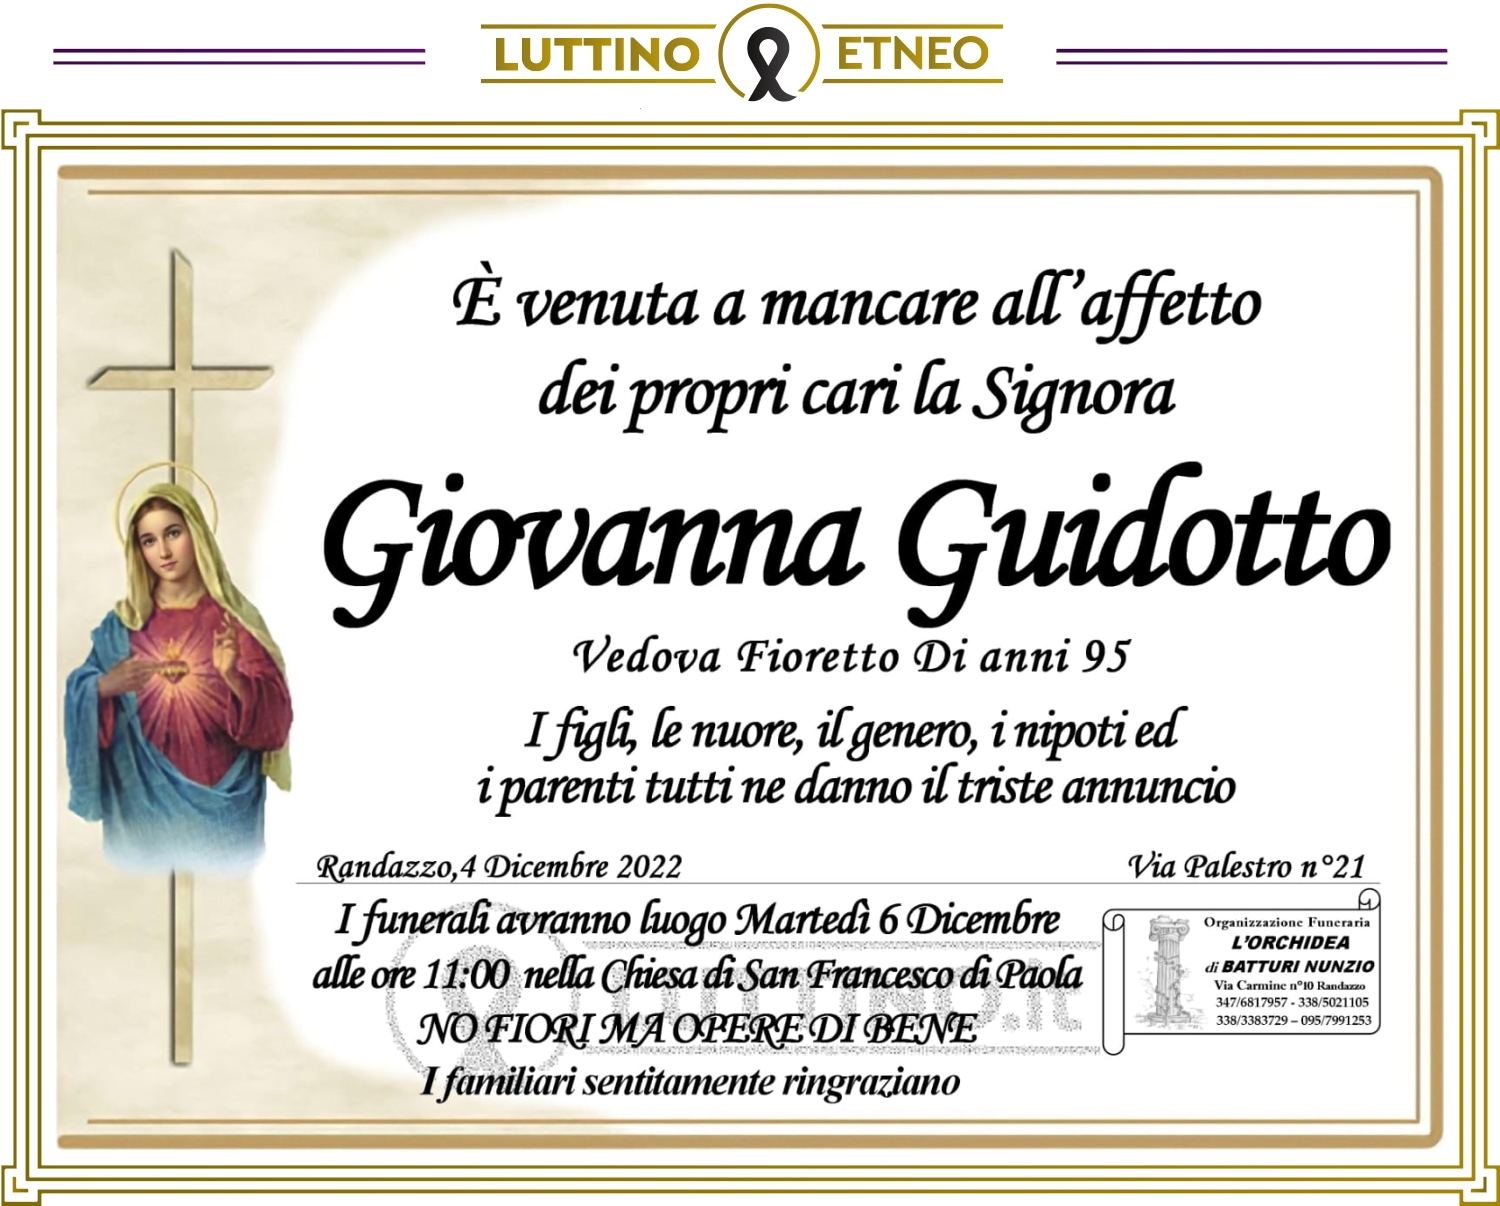 Giovanna Guidotto